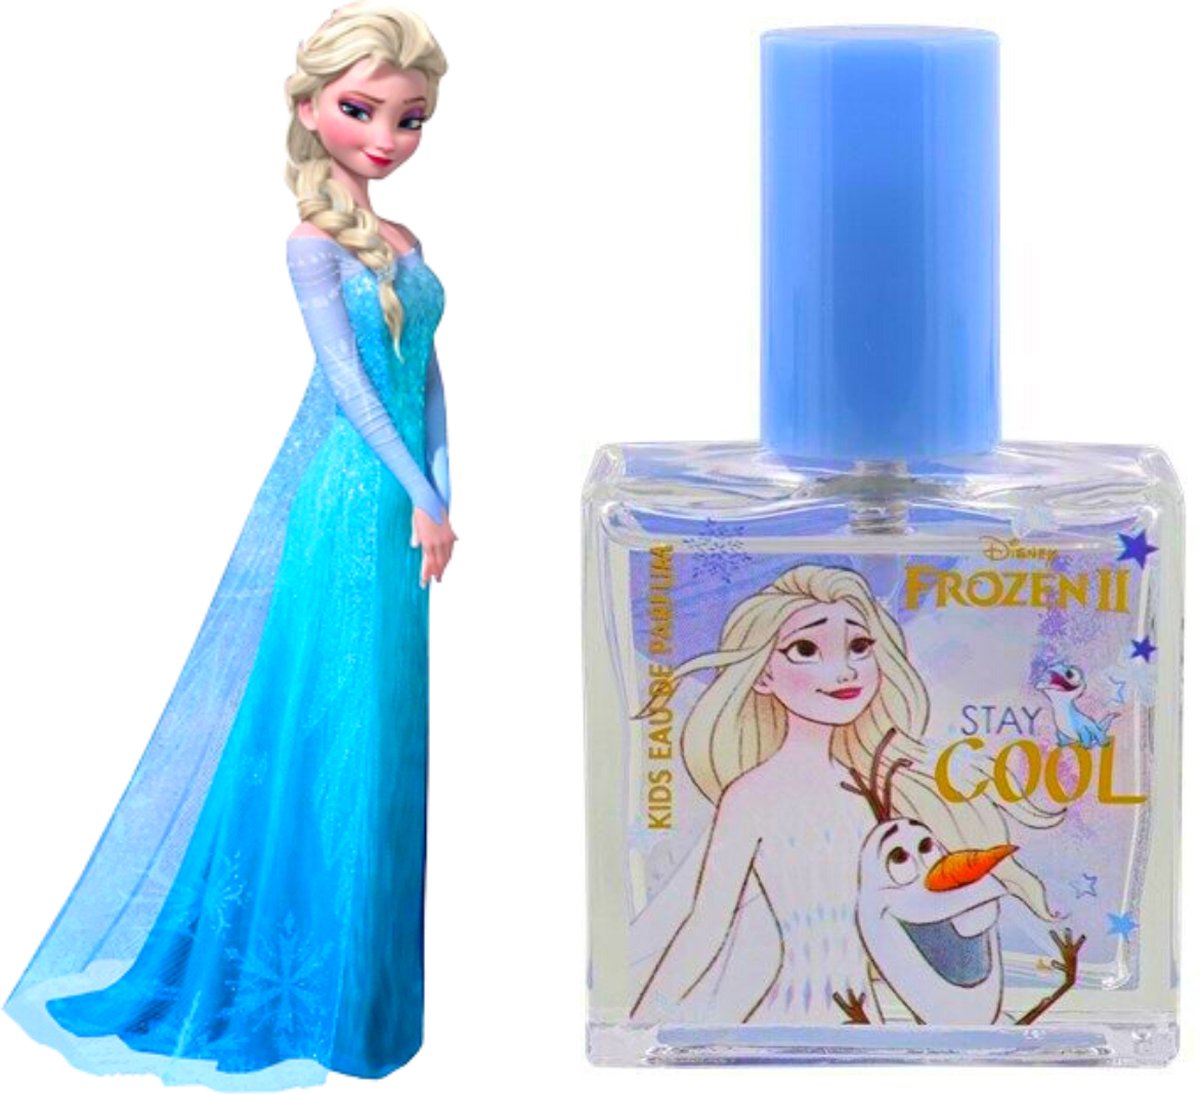 Disney Frozen Eau de Parfum Elsa & Olaf - 20 ml - Frozen Prinses Elsa & Olaf - Kinderparfum meisjes - Tiener meisjes cadeau